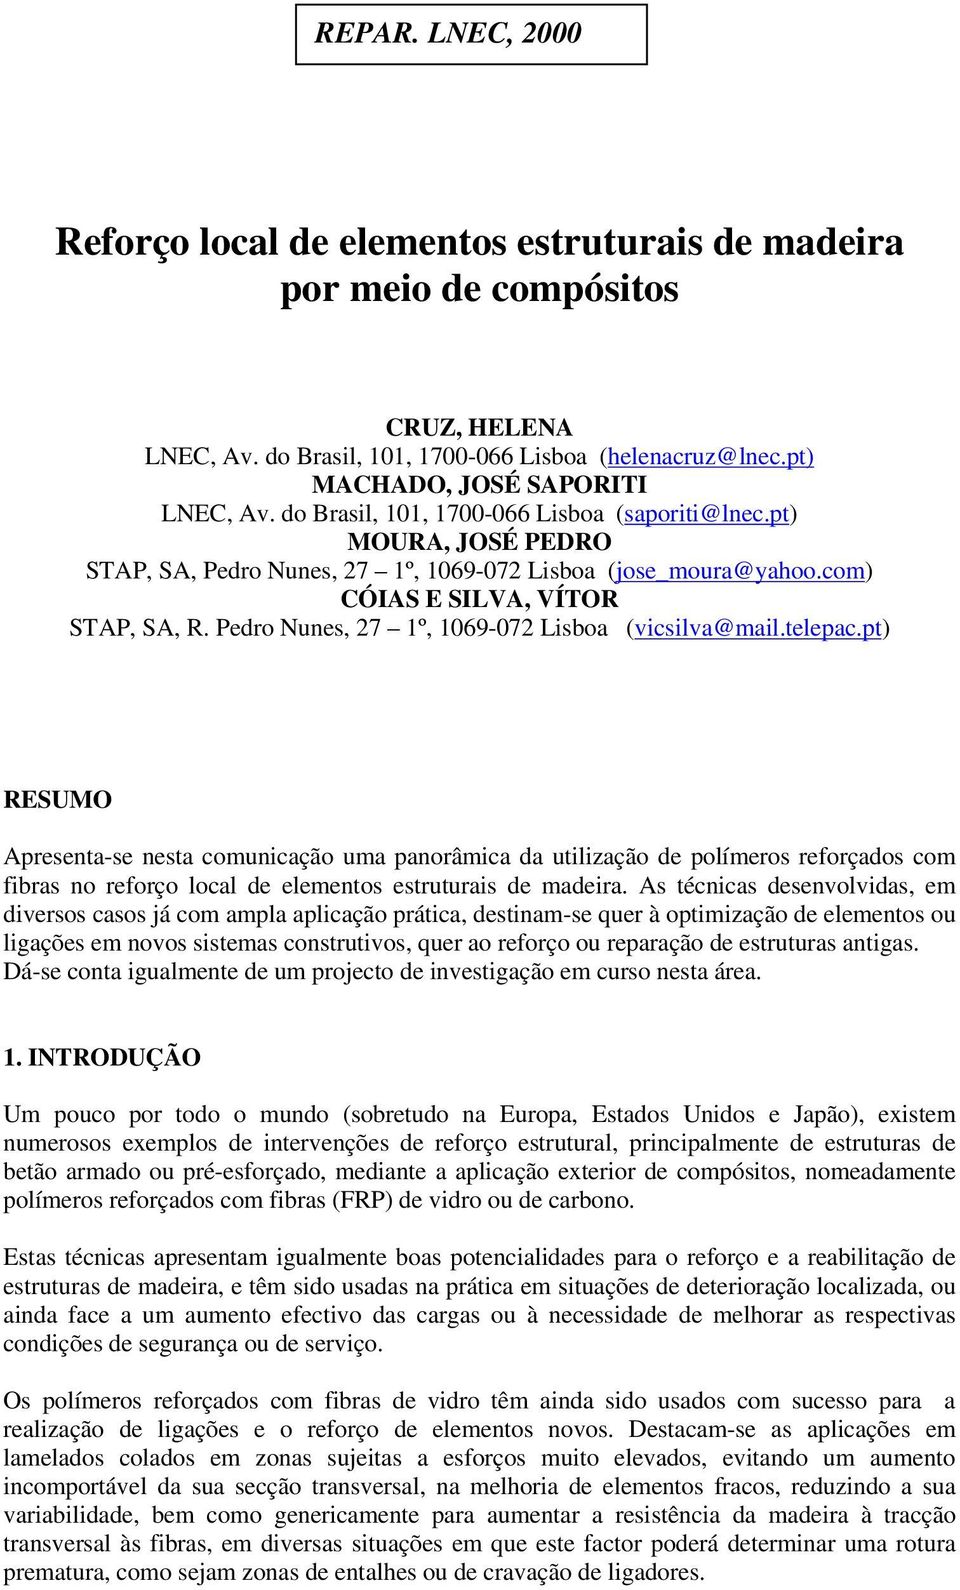 Pedro Nunes, 27 1º, 1069-072 Lisboa (vicsilva@mail.telepac.